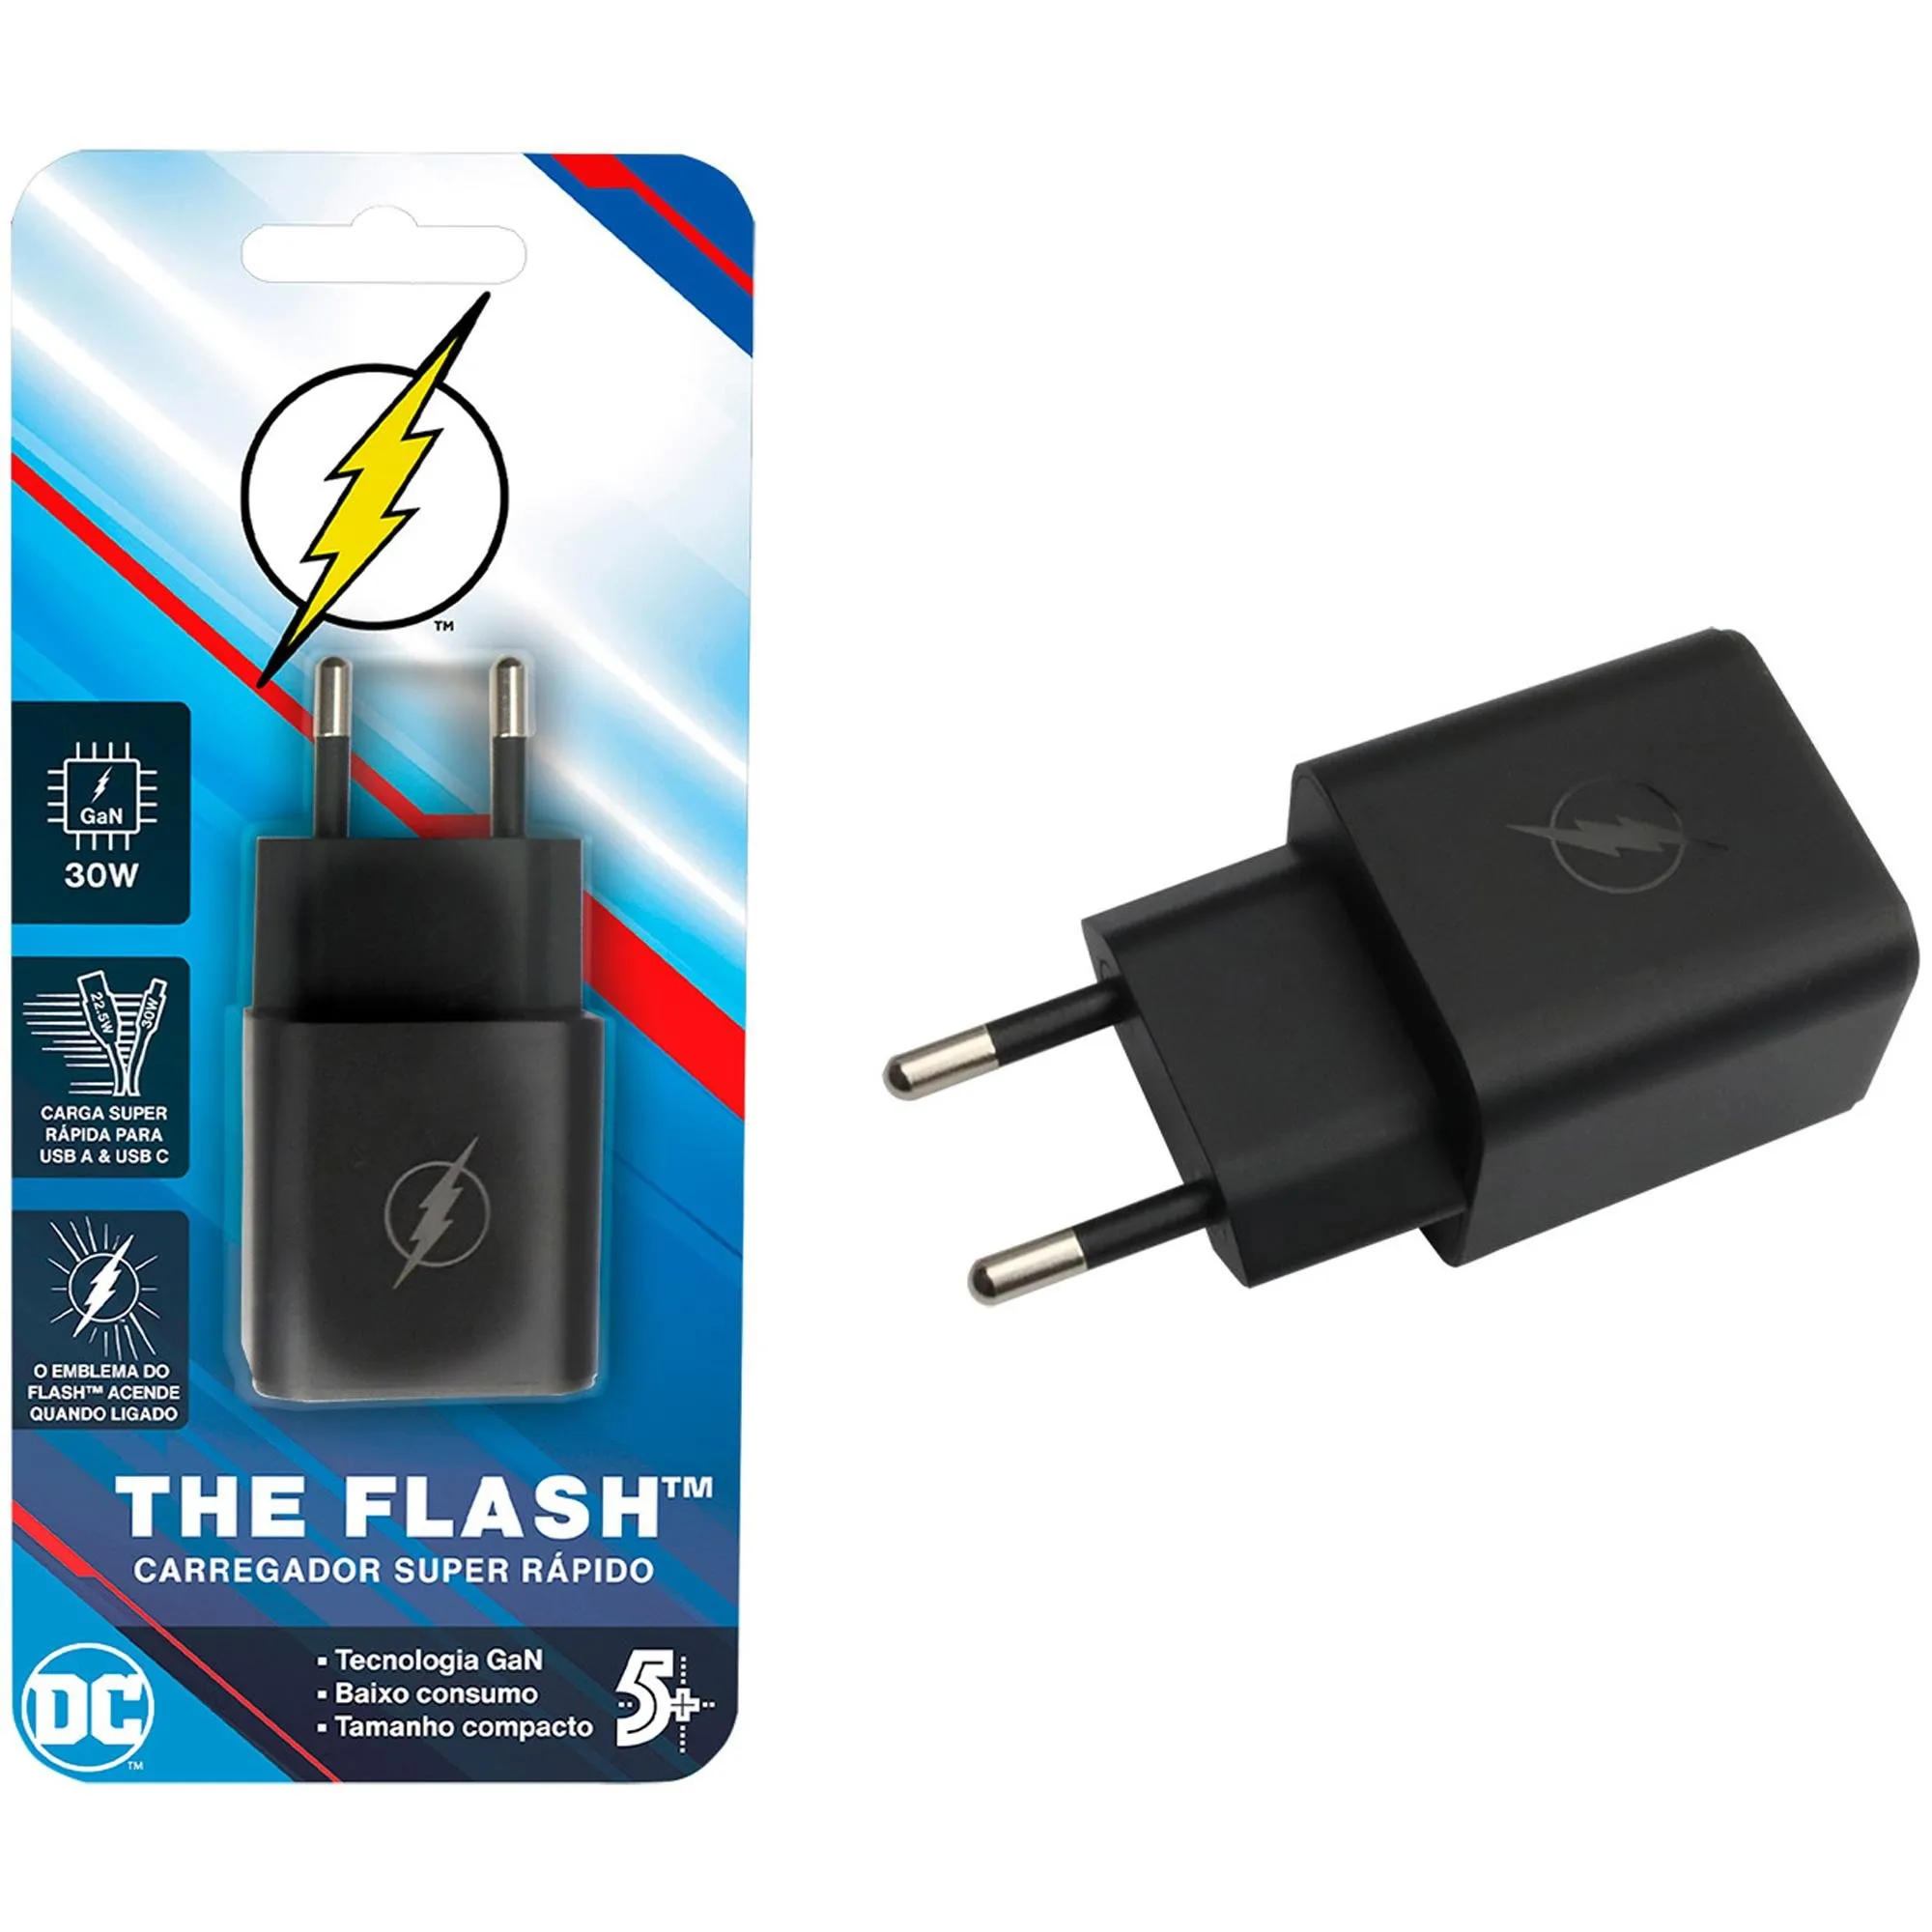 Carregador USB-A USB-C Flash 5+ por 205,99 à vista no boleto/pix ou parcele em até 8x sem juros. Compre na loja Mundomax!